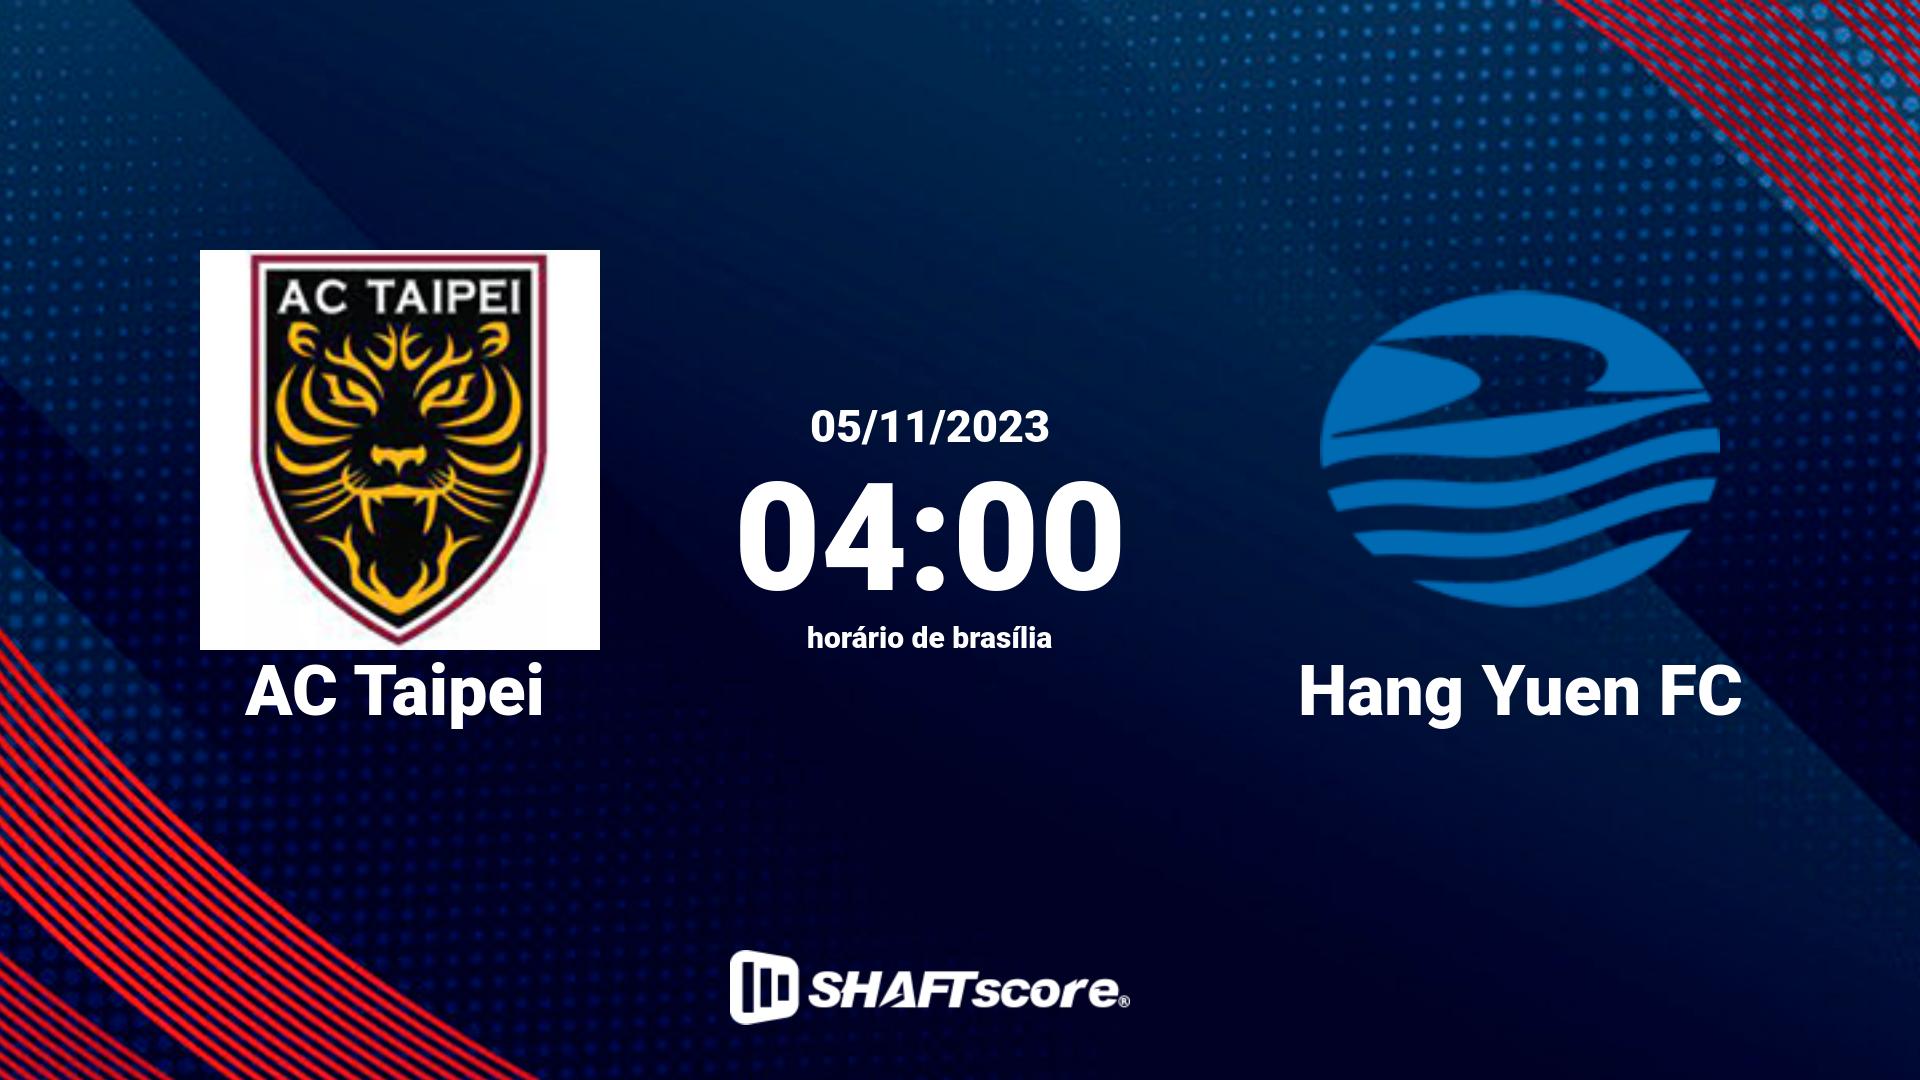 Estatísticas do jogo AC Taipei vs Hang Yuen FC 05.11 04:00